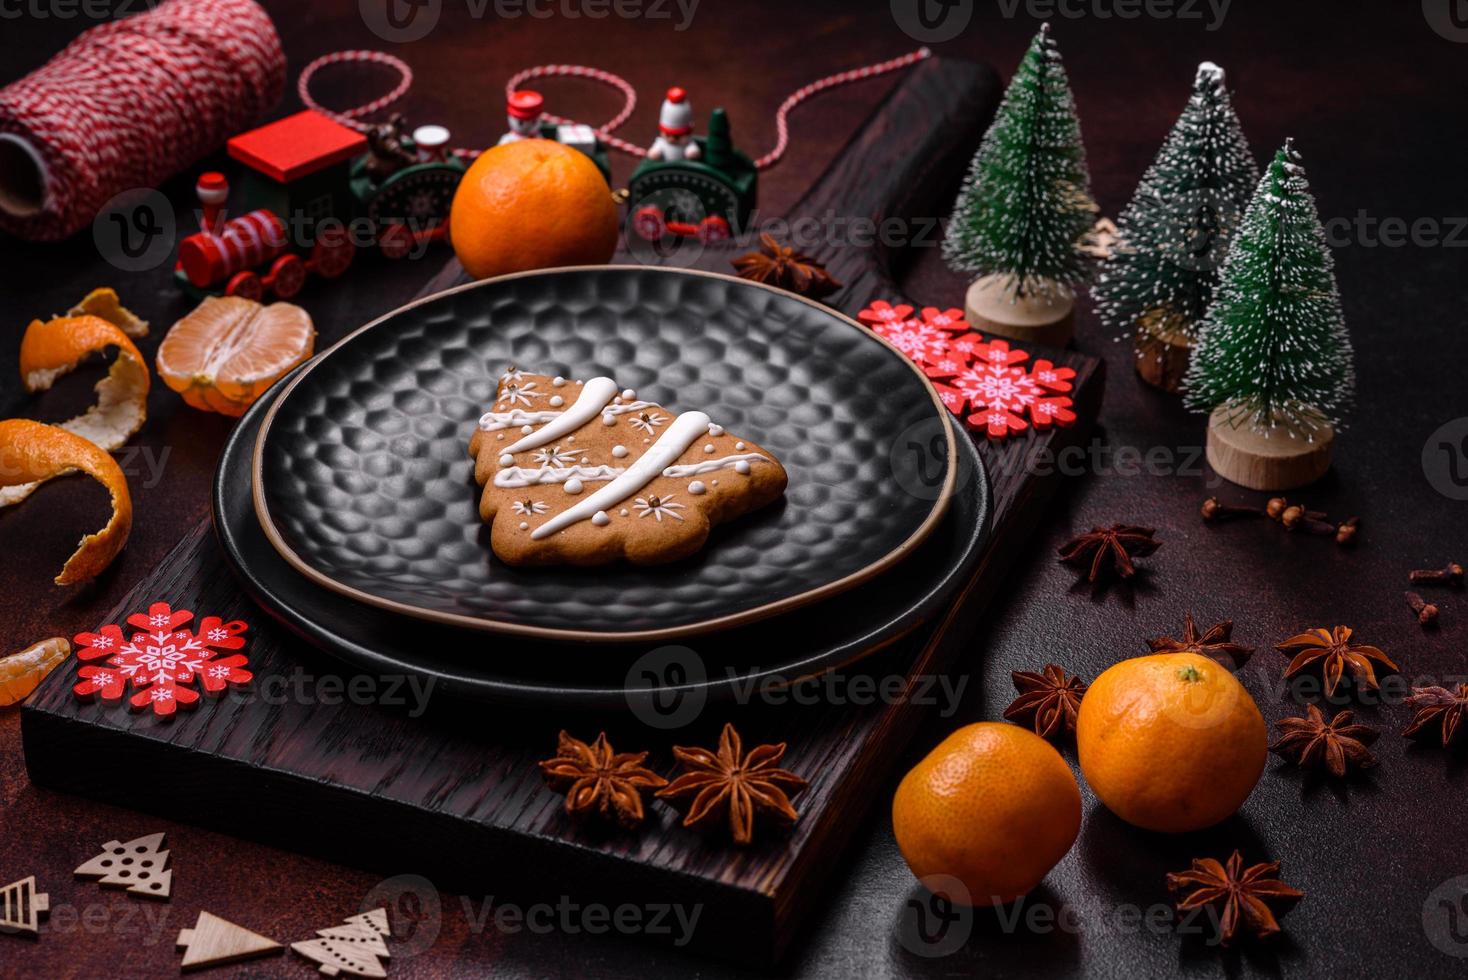 hermosas decoraciones navideñas con juguetes navideños, clementinas y pan de jengibre foto